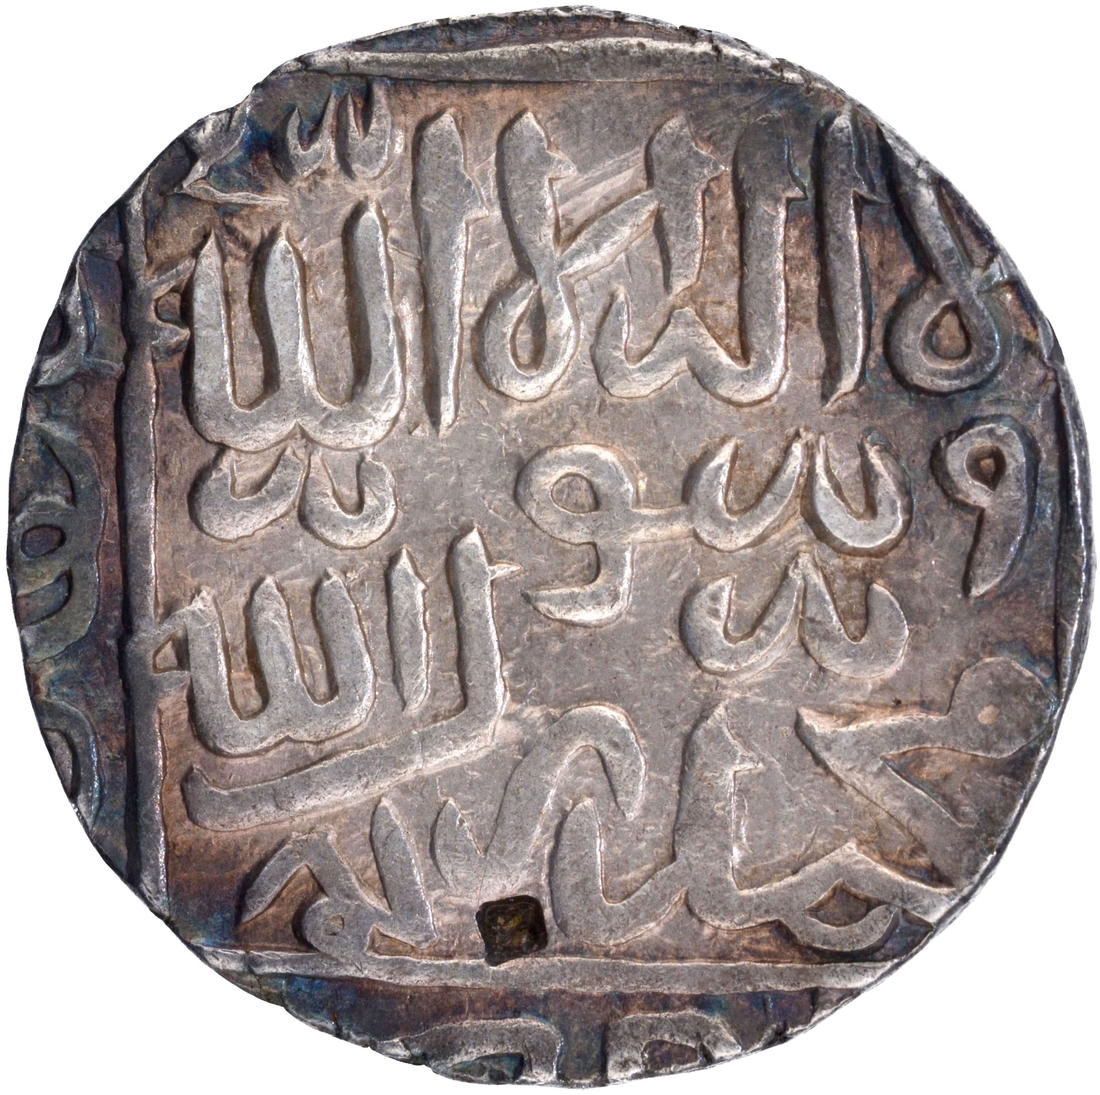  Daud Shah Kararani Satgaon Mint Silver Rupee AH (9)8X Coin of Bengal Sultanat.